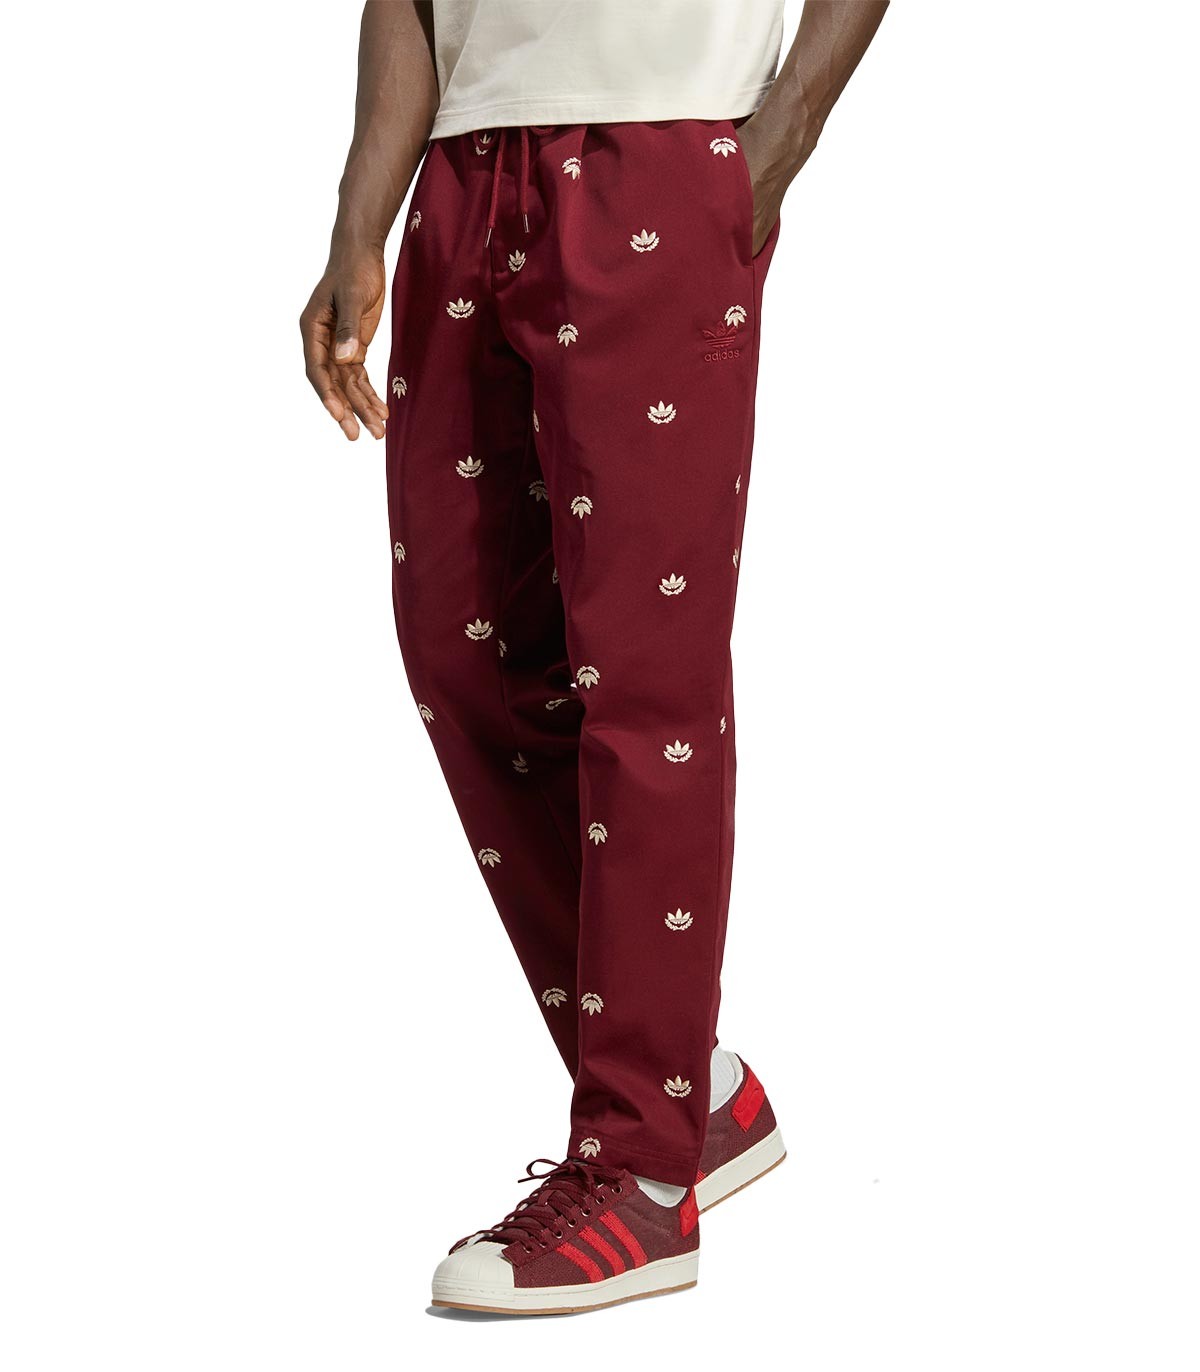 Adidas - Pantalón Chino con Logos Estampados - Marrón